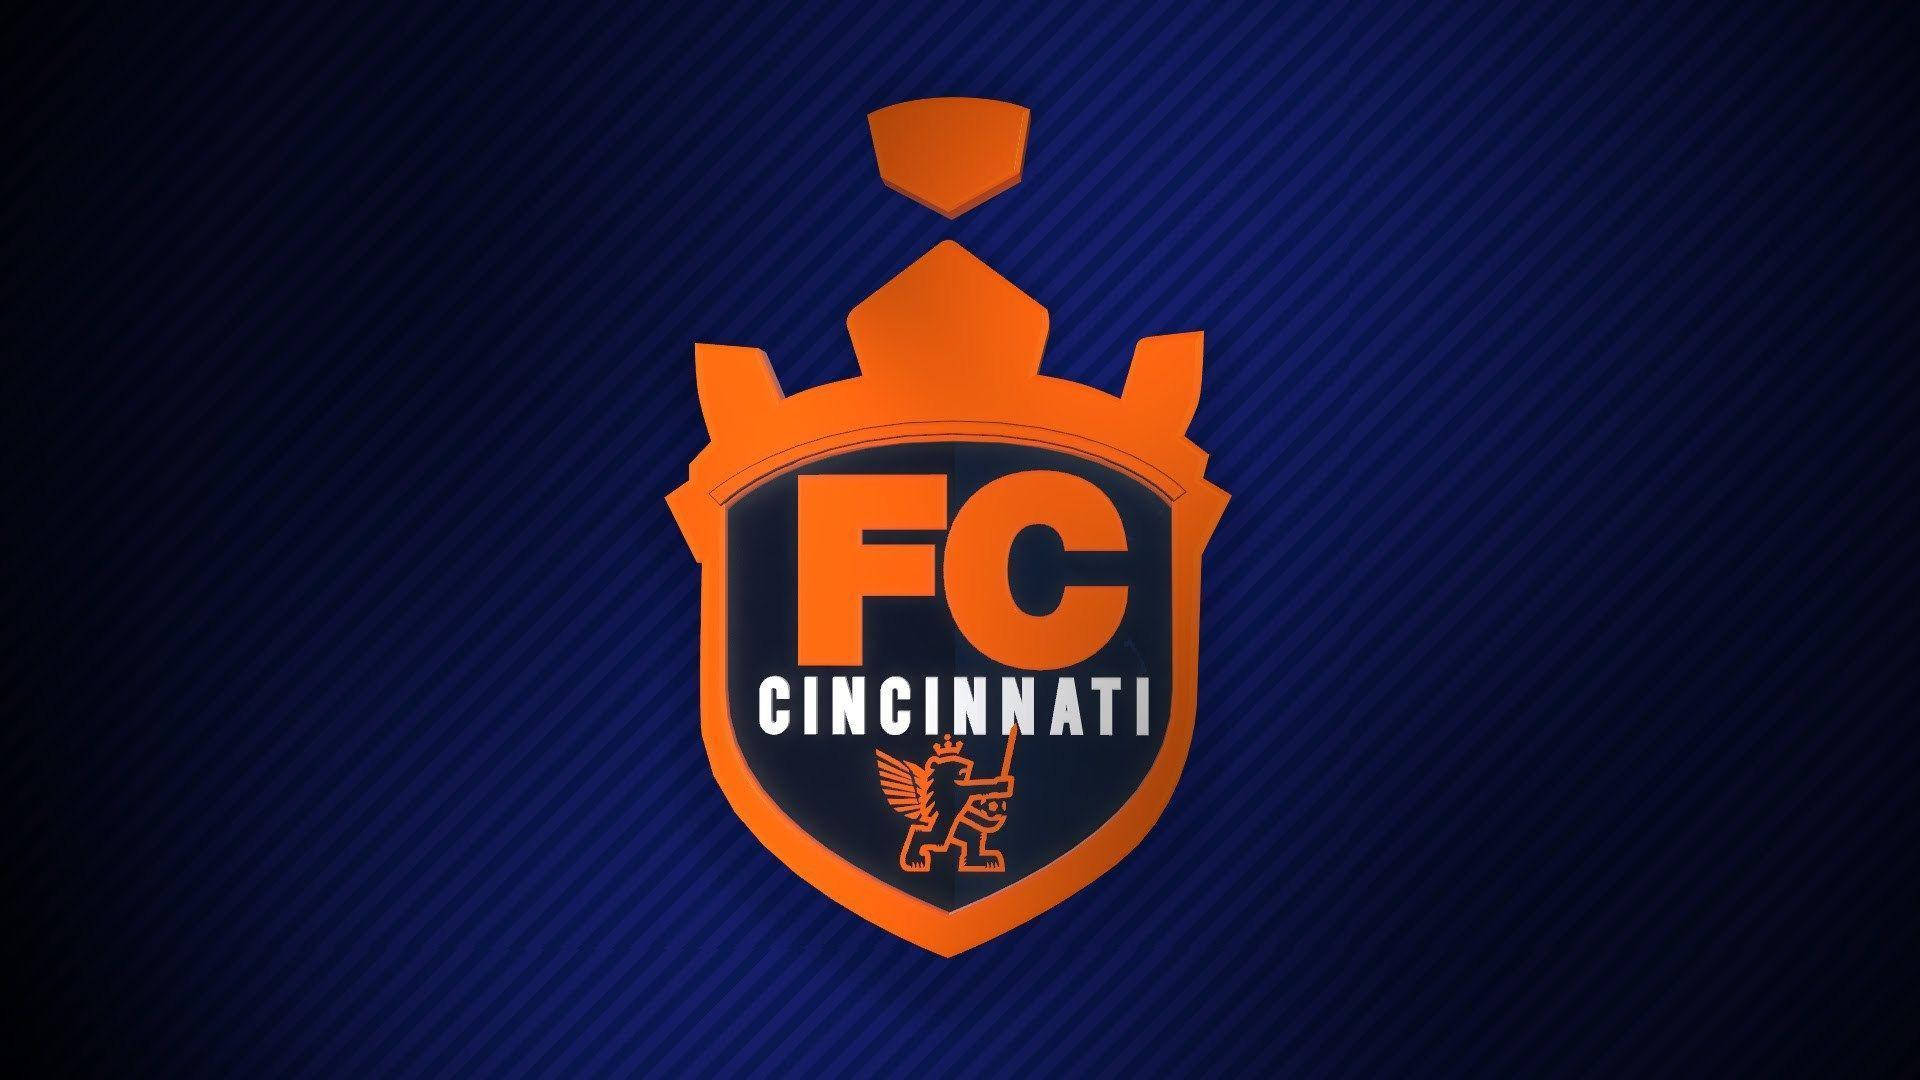 The Old Logo Of Fc Cincinnati Wallpaper